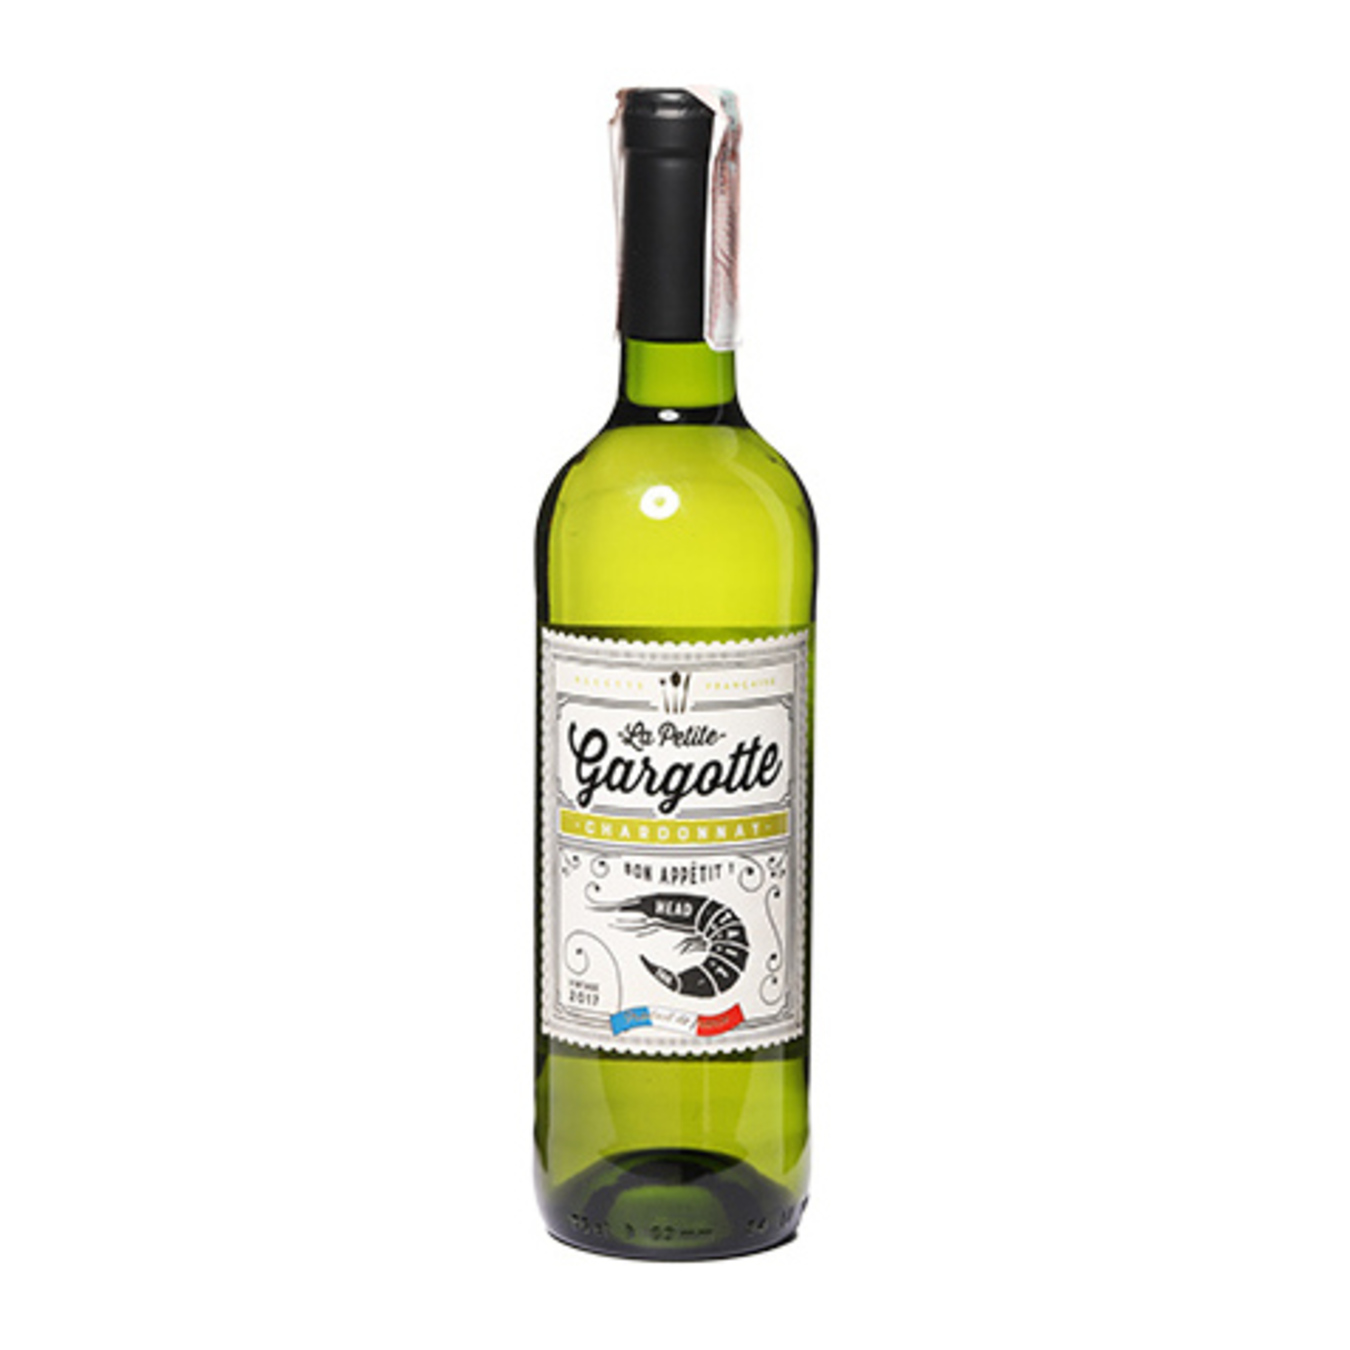 Вино Gargotte Chardonnay Pays d'Oc белое сухое 13% 0,75л